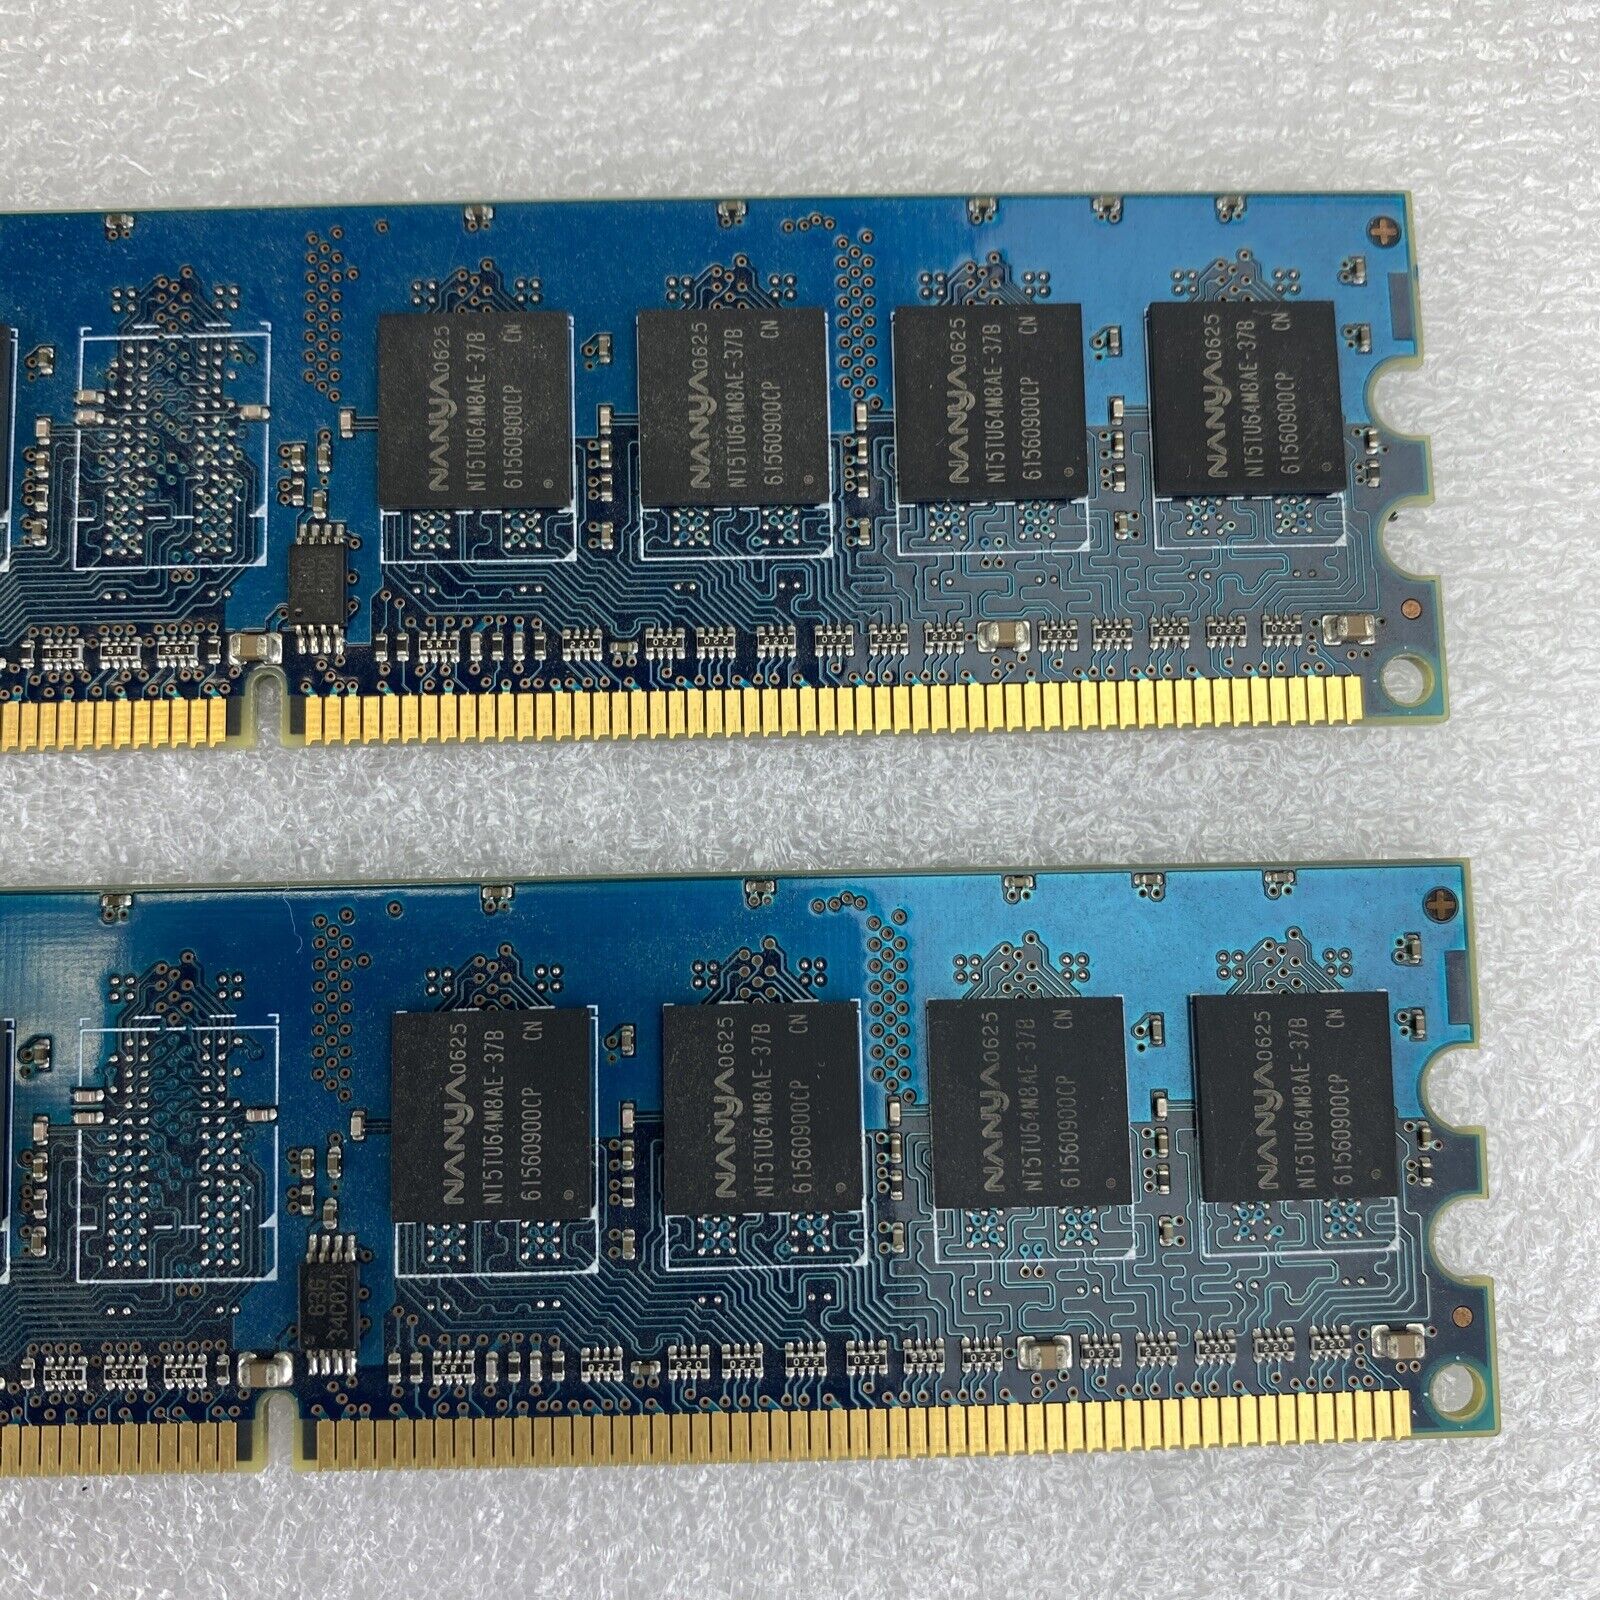 2x 512MB Nanya NT512T64U88A0BY-37B 4200U 1Rx8 DDR2 PC desktop memory RAM